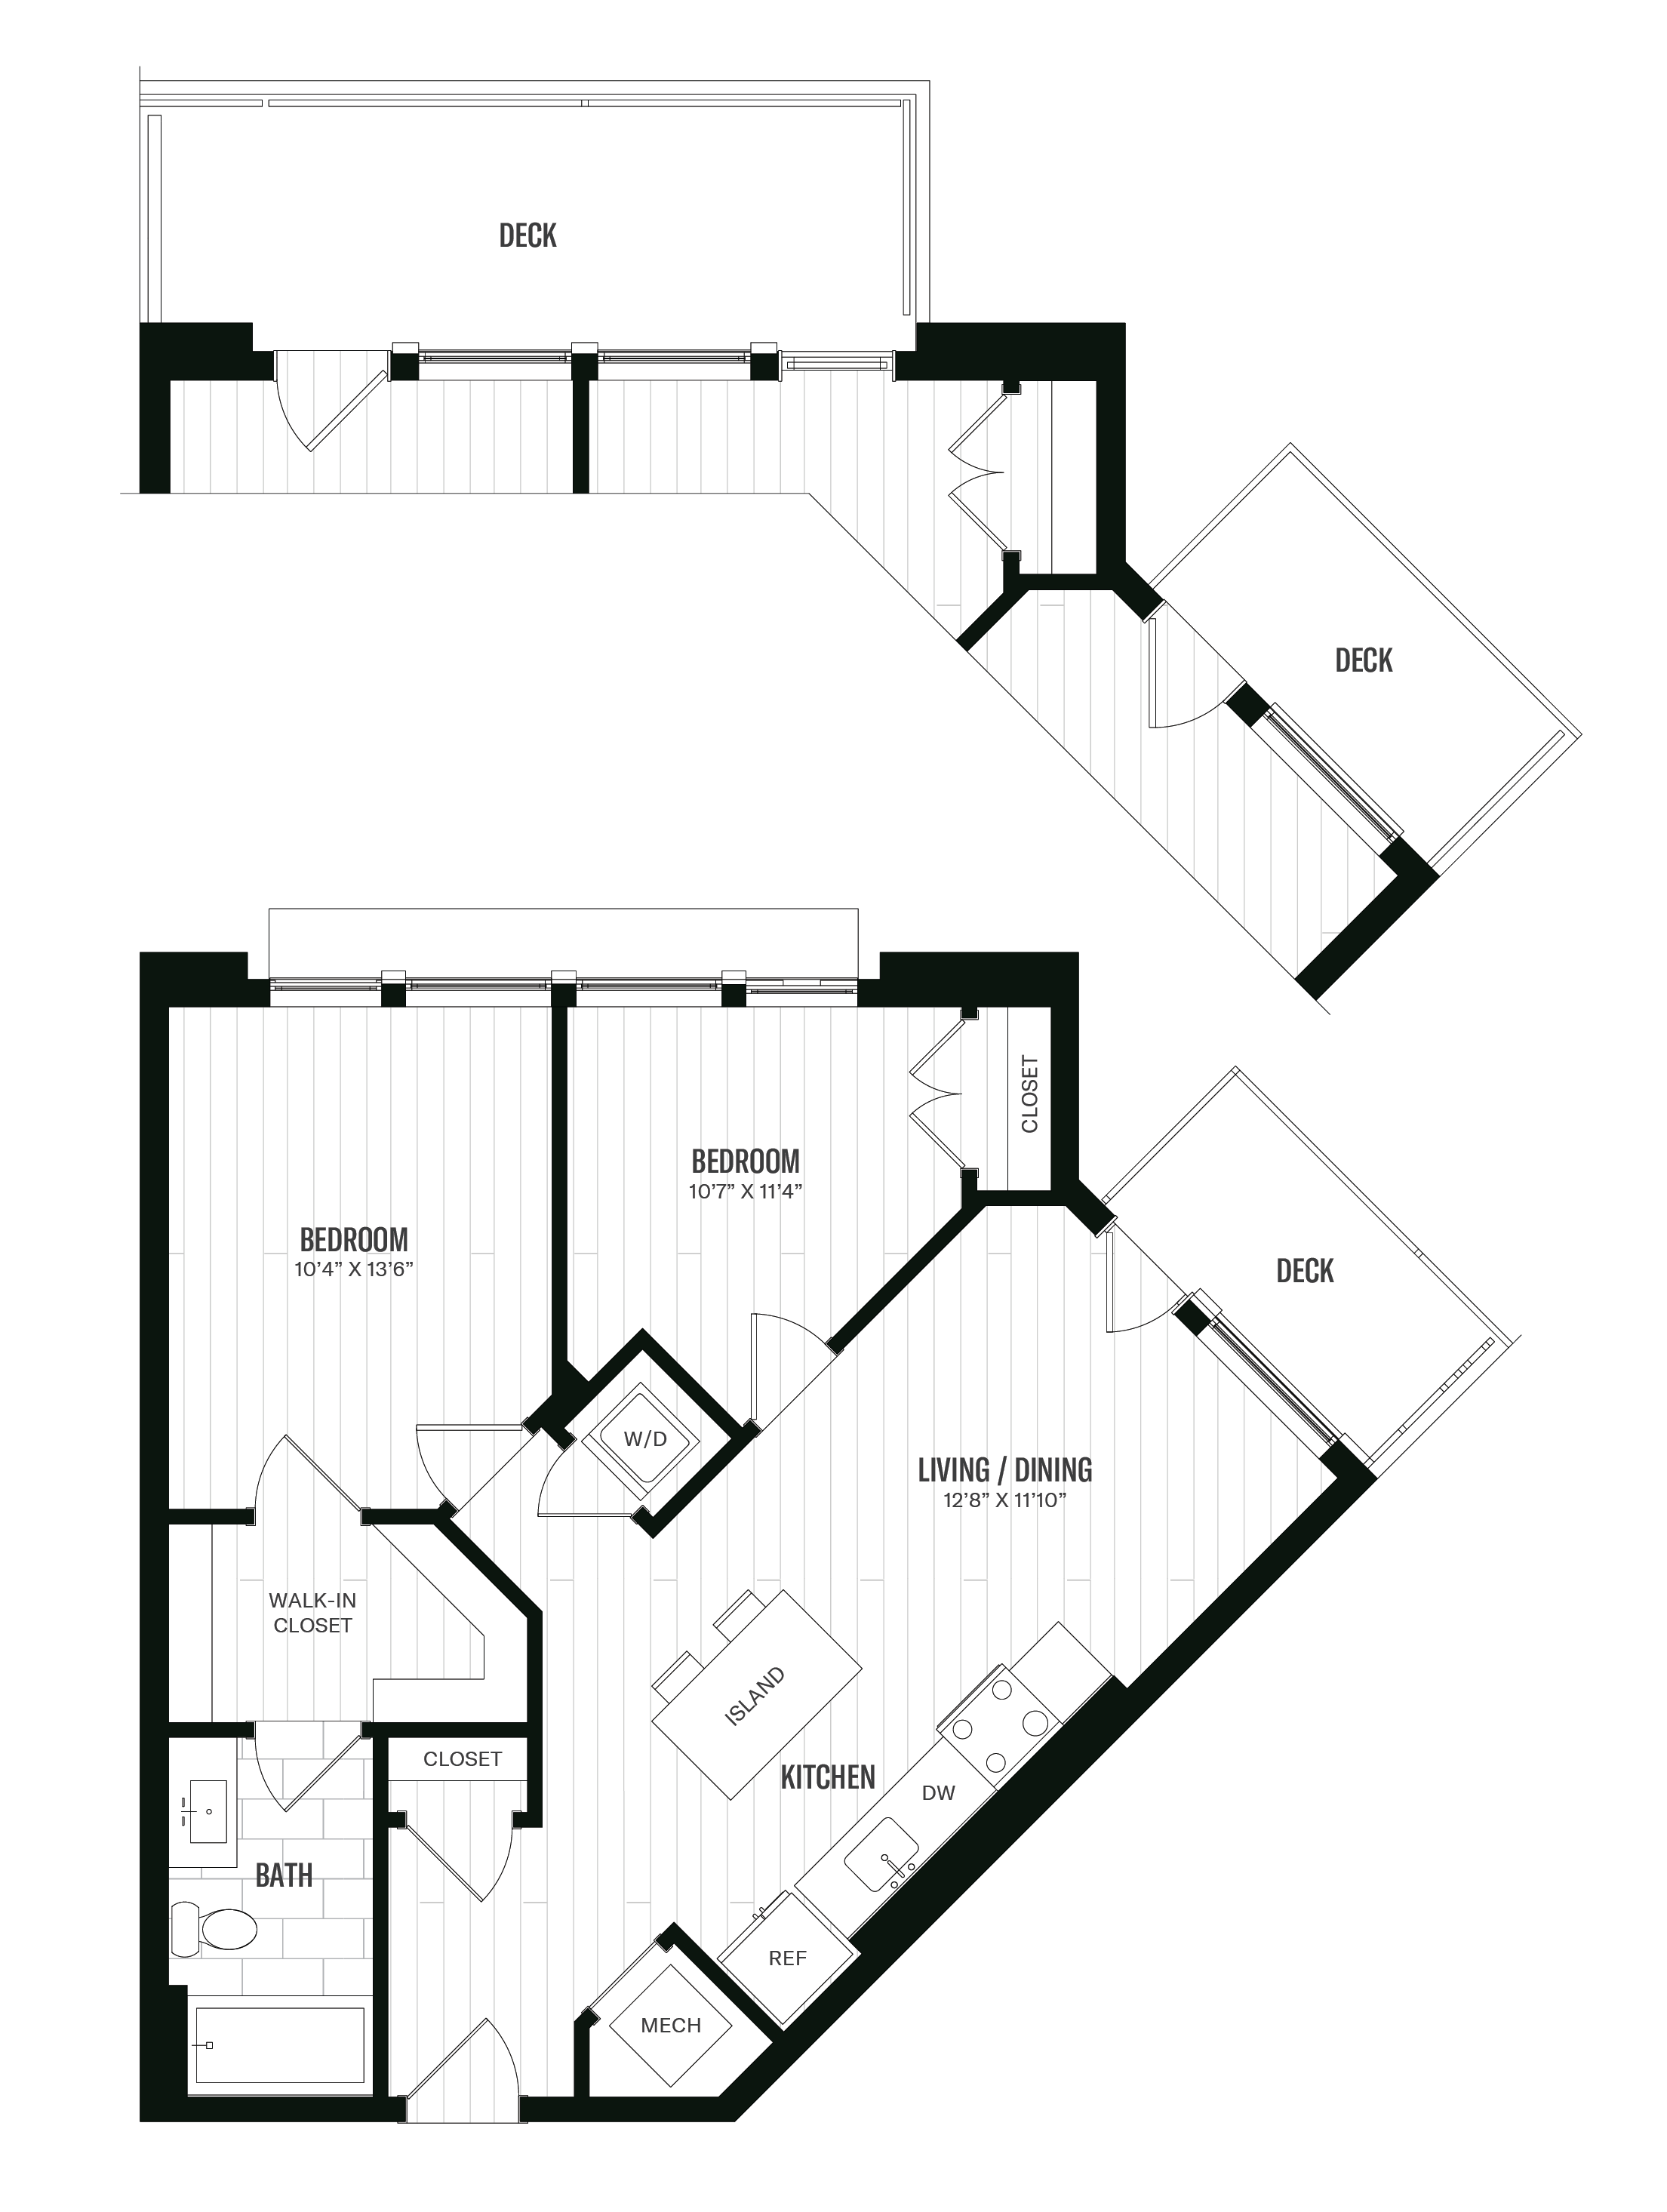 Floorplan image of unit 414